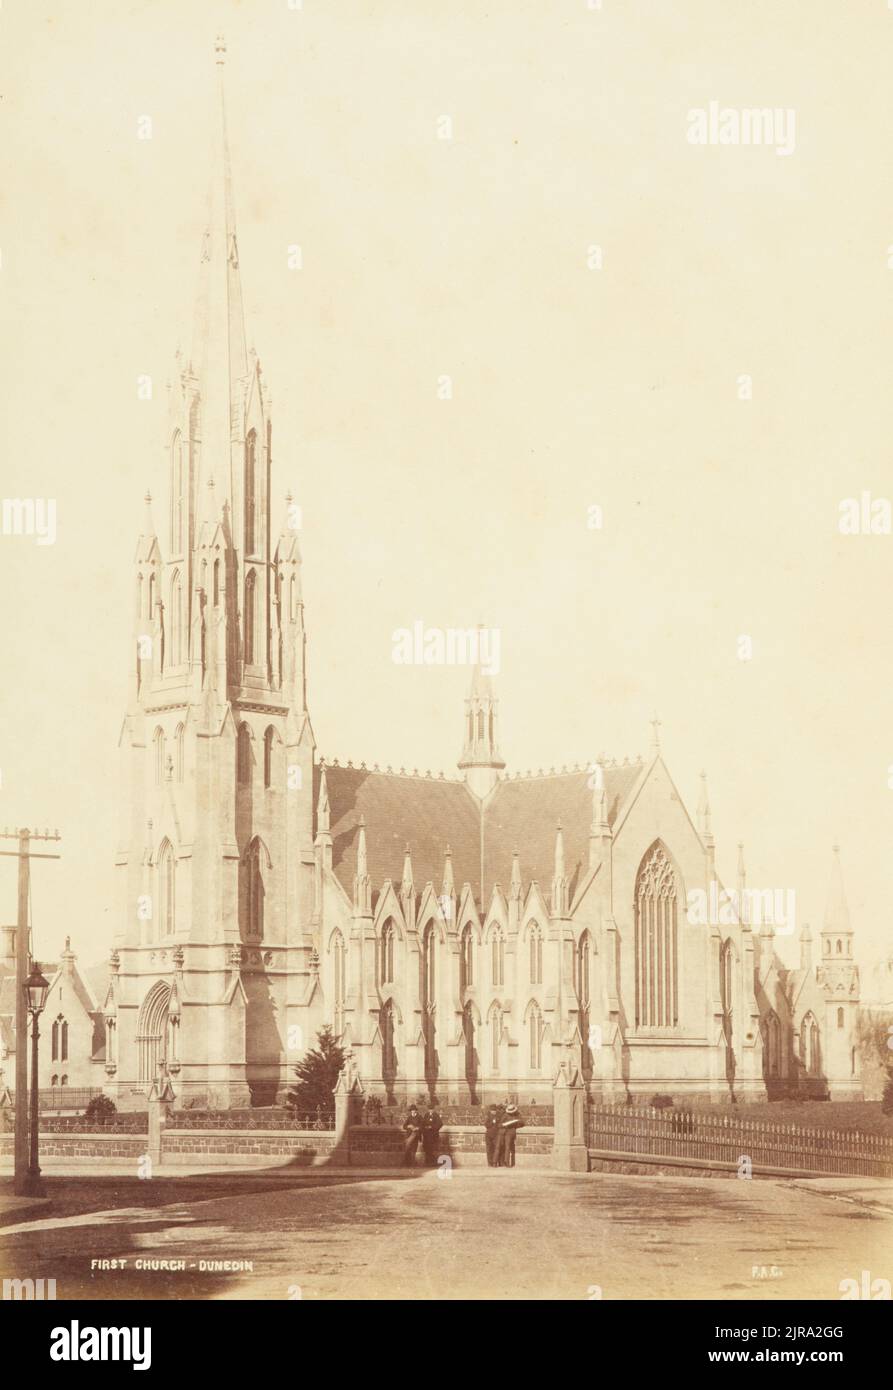 Prima chiesa, Dunedin. Dall'album: N. Z. Scenografie, 1876-1878, Dunedin, di Frank Coxhead. Foto Stock